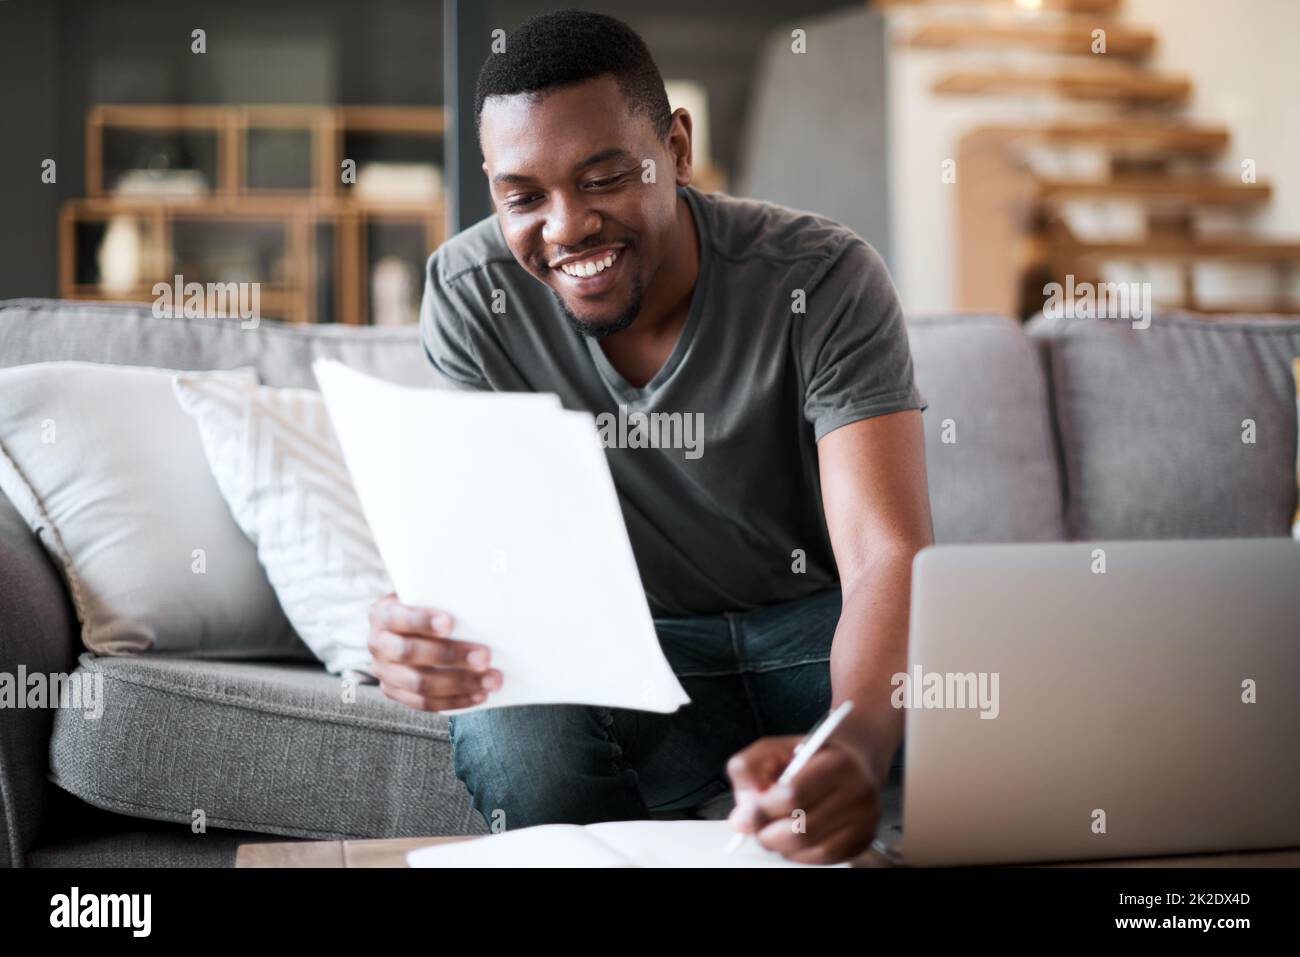 Verwalten einer Menge Aufgaben von zu Hause aus. Aufnahme eines jungen Mannes, der zu Hause Papierkram durchläuft. Stockfoto